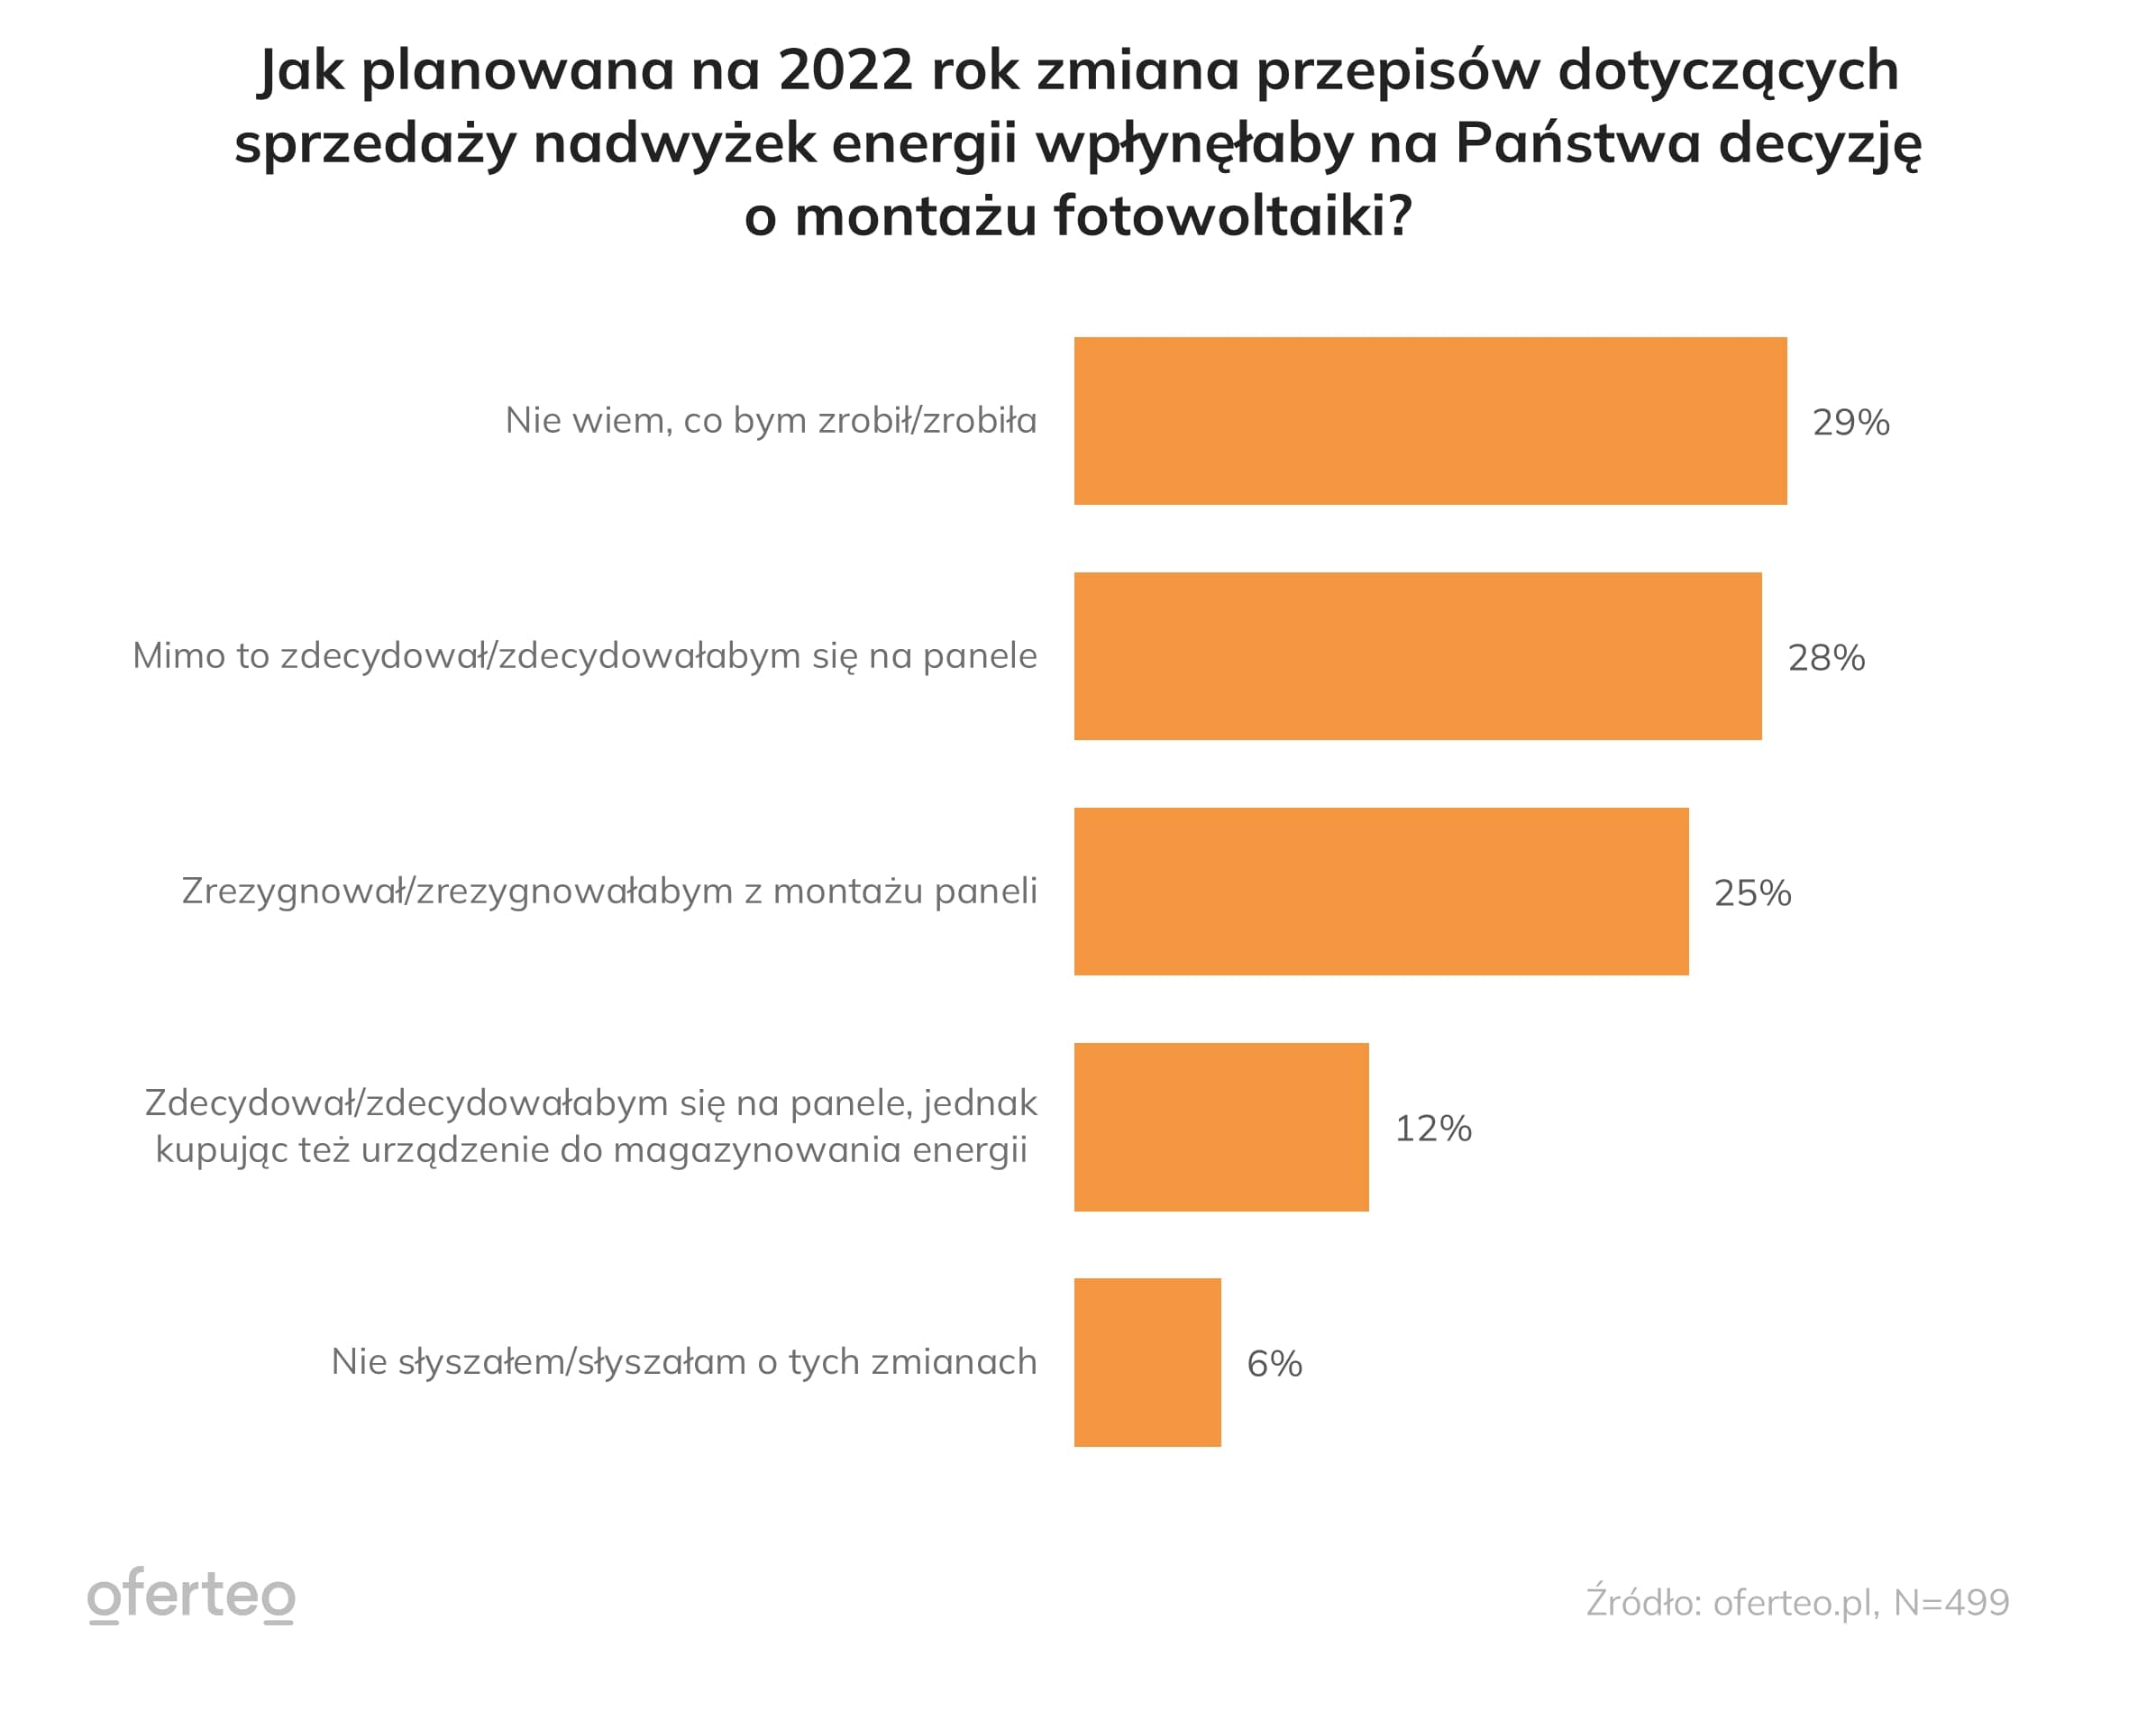 Wykres pokazujący jak planowana na 2022 rok zmiana przepisów dotyczących sprzedaży nadwyżek energii wpłynęłaby na decyzję o montażu fotowoltaiki